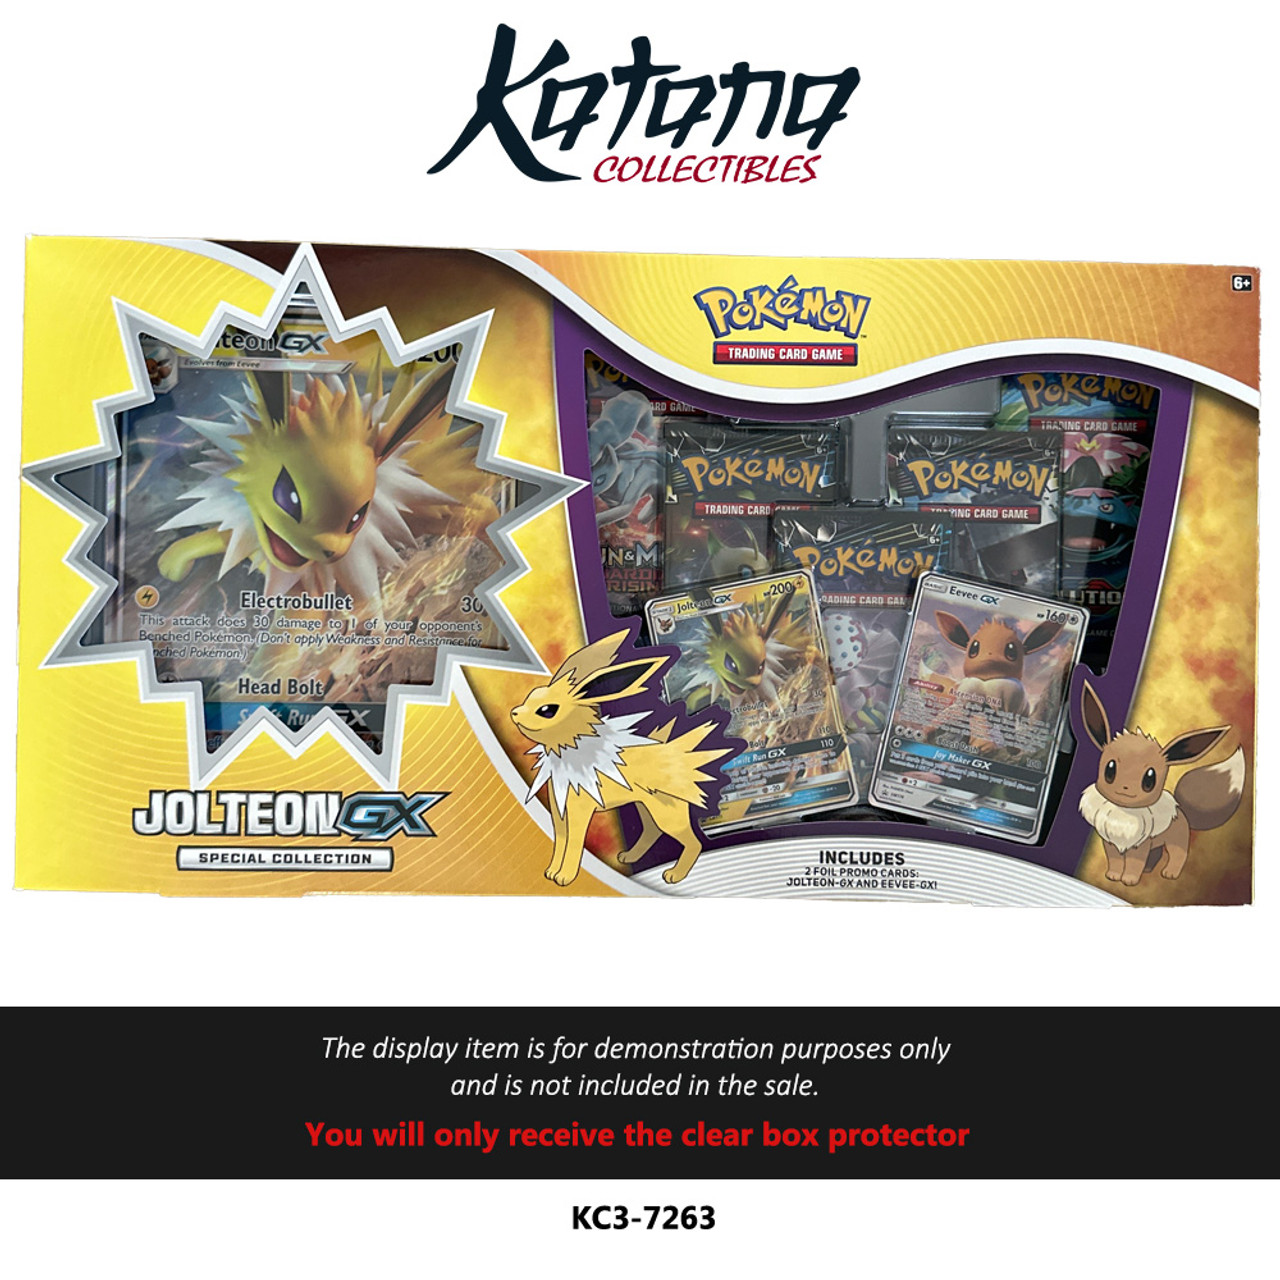 Katana Collectibles Protector For Pokémon Jolteon GX Special Collection